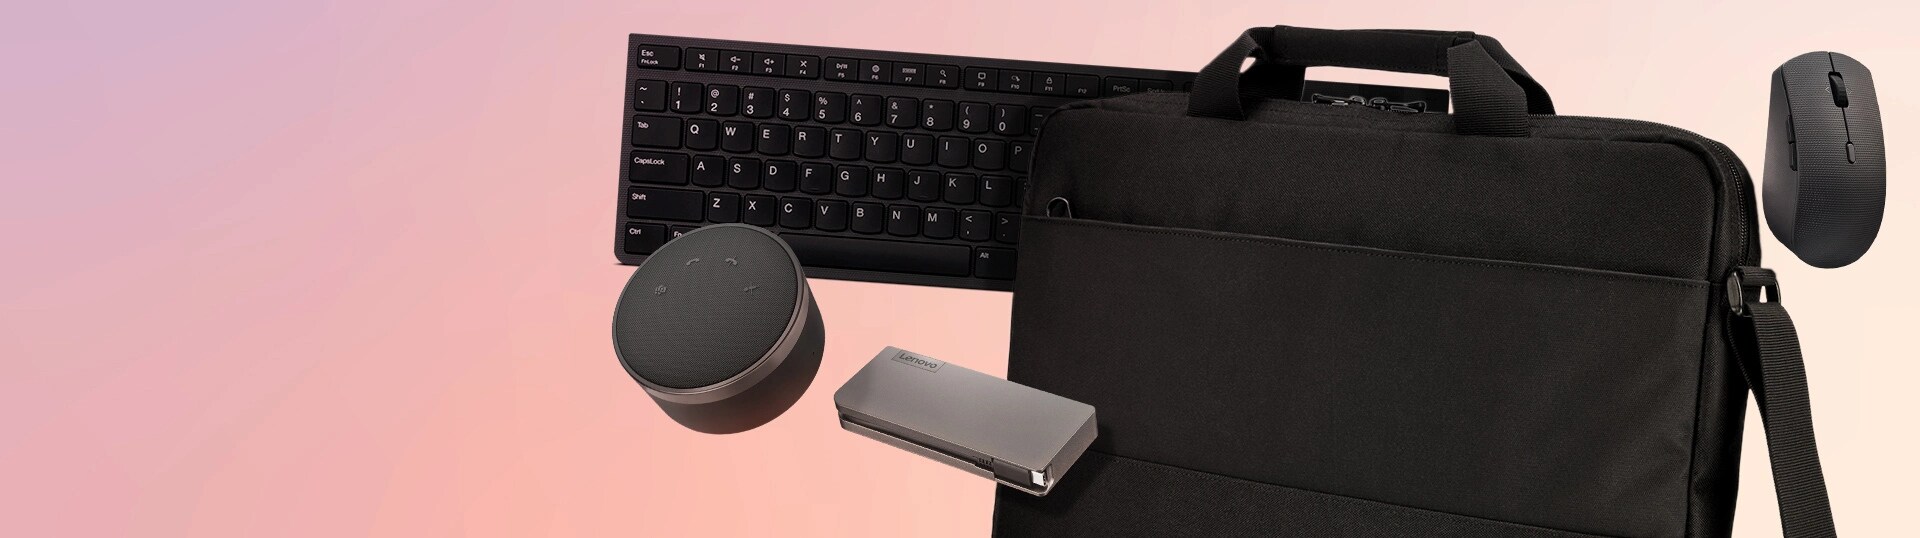 Un haut-parleur filaire Lenovo Go, un ThinkPad de base de 16 pouces avec ouverture sur le dessus, un concentrateur de voyage USB-C alimenté par Lenovo et un ensemble de clavier et souris sans fil rechargeables professionnels de Lenovo sont en vedette en arrière-plan.